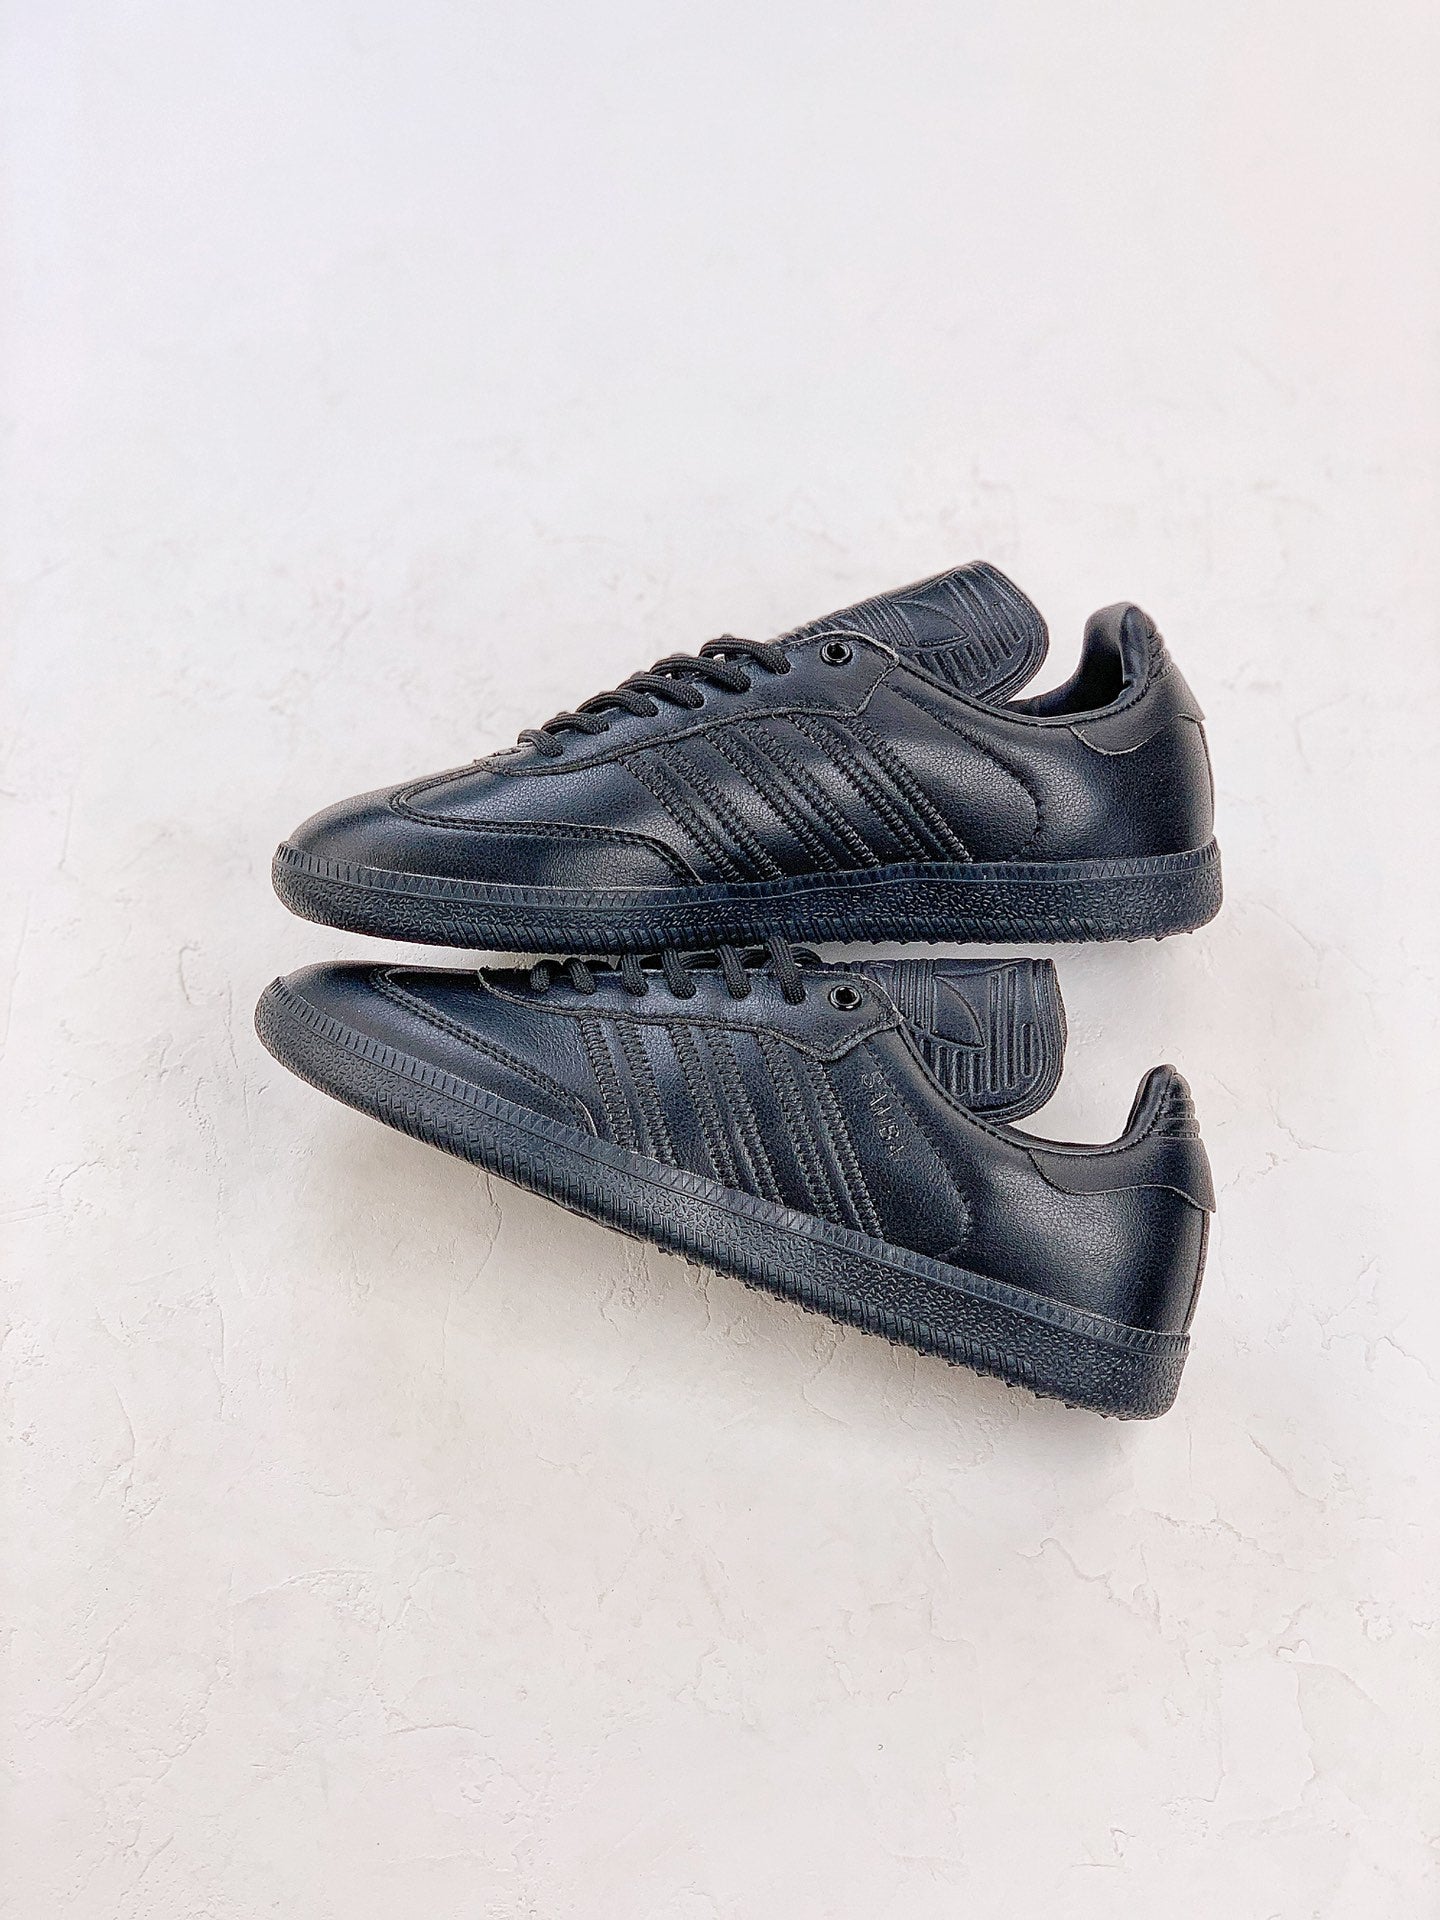 Adidas samba black shoes